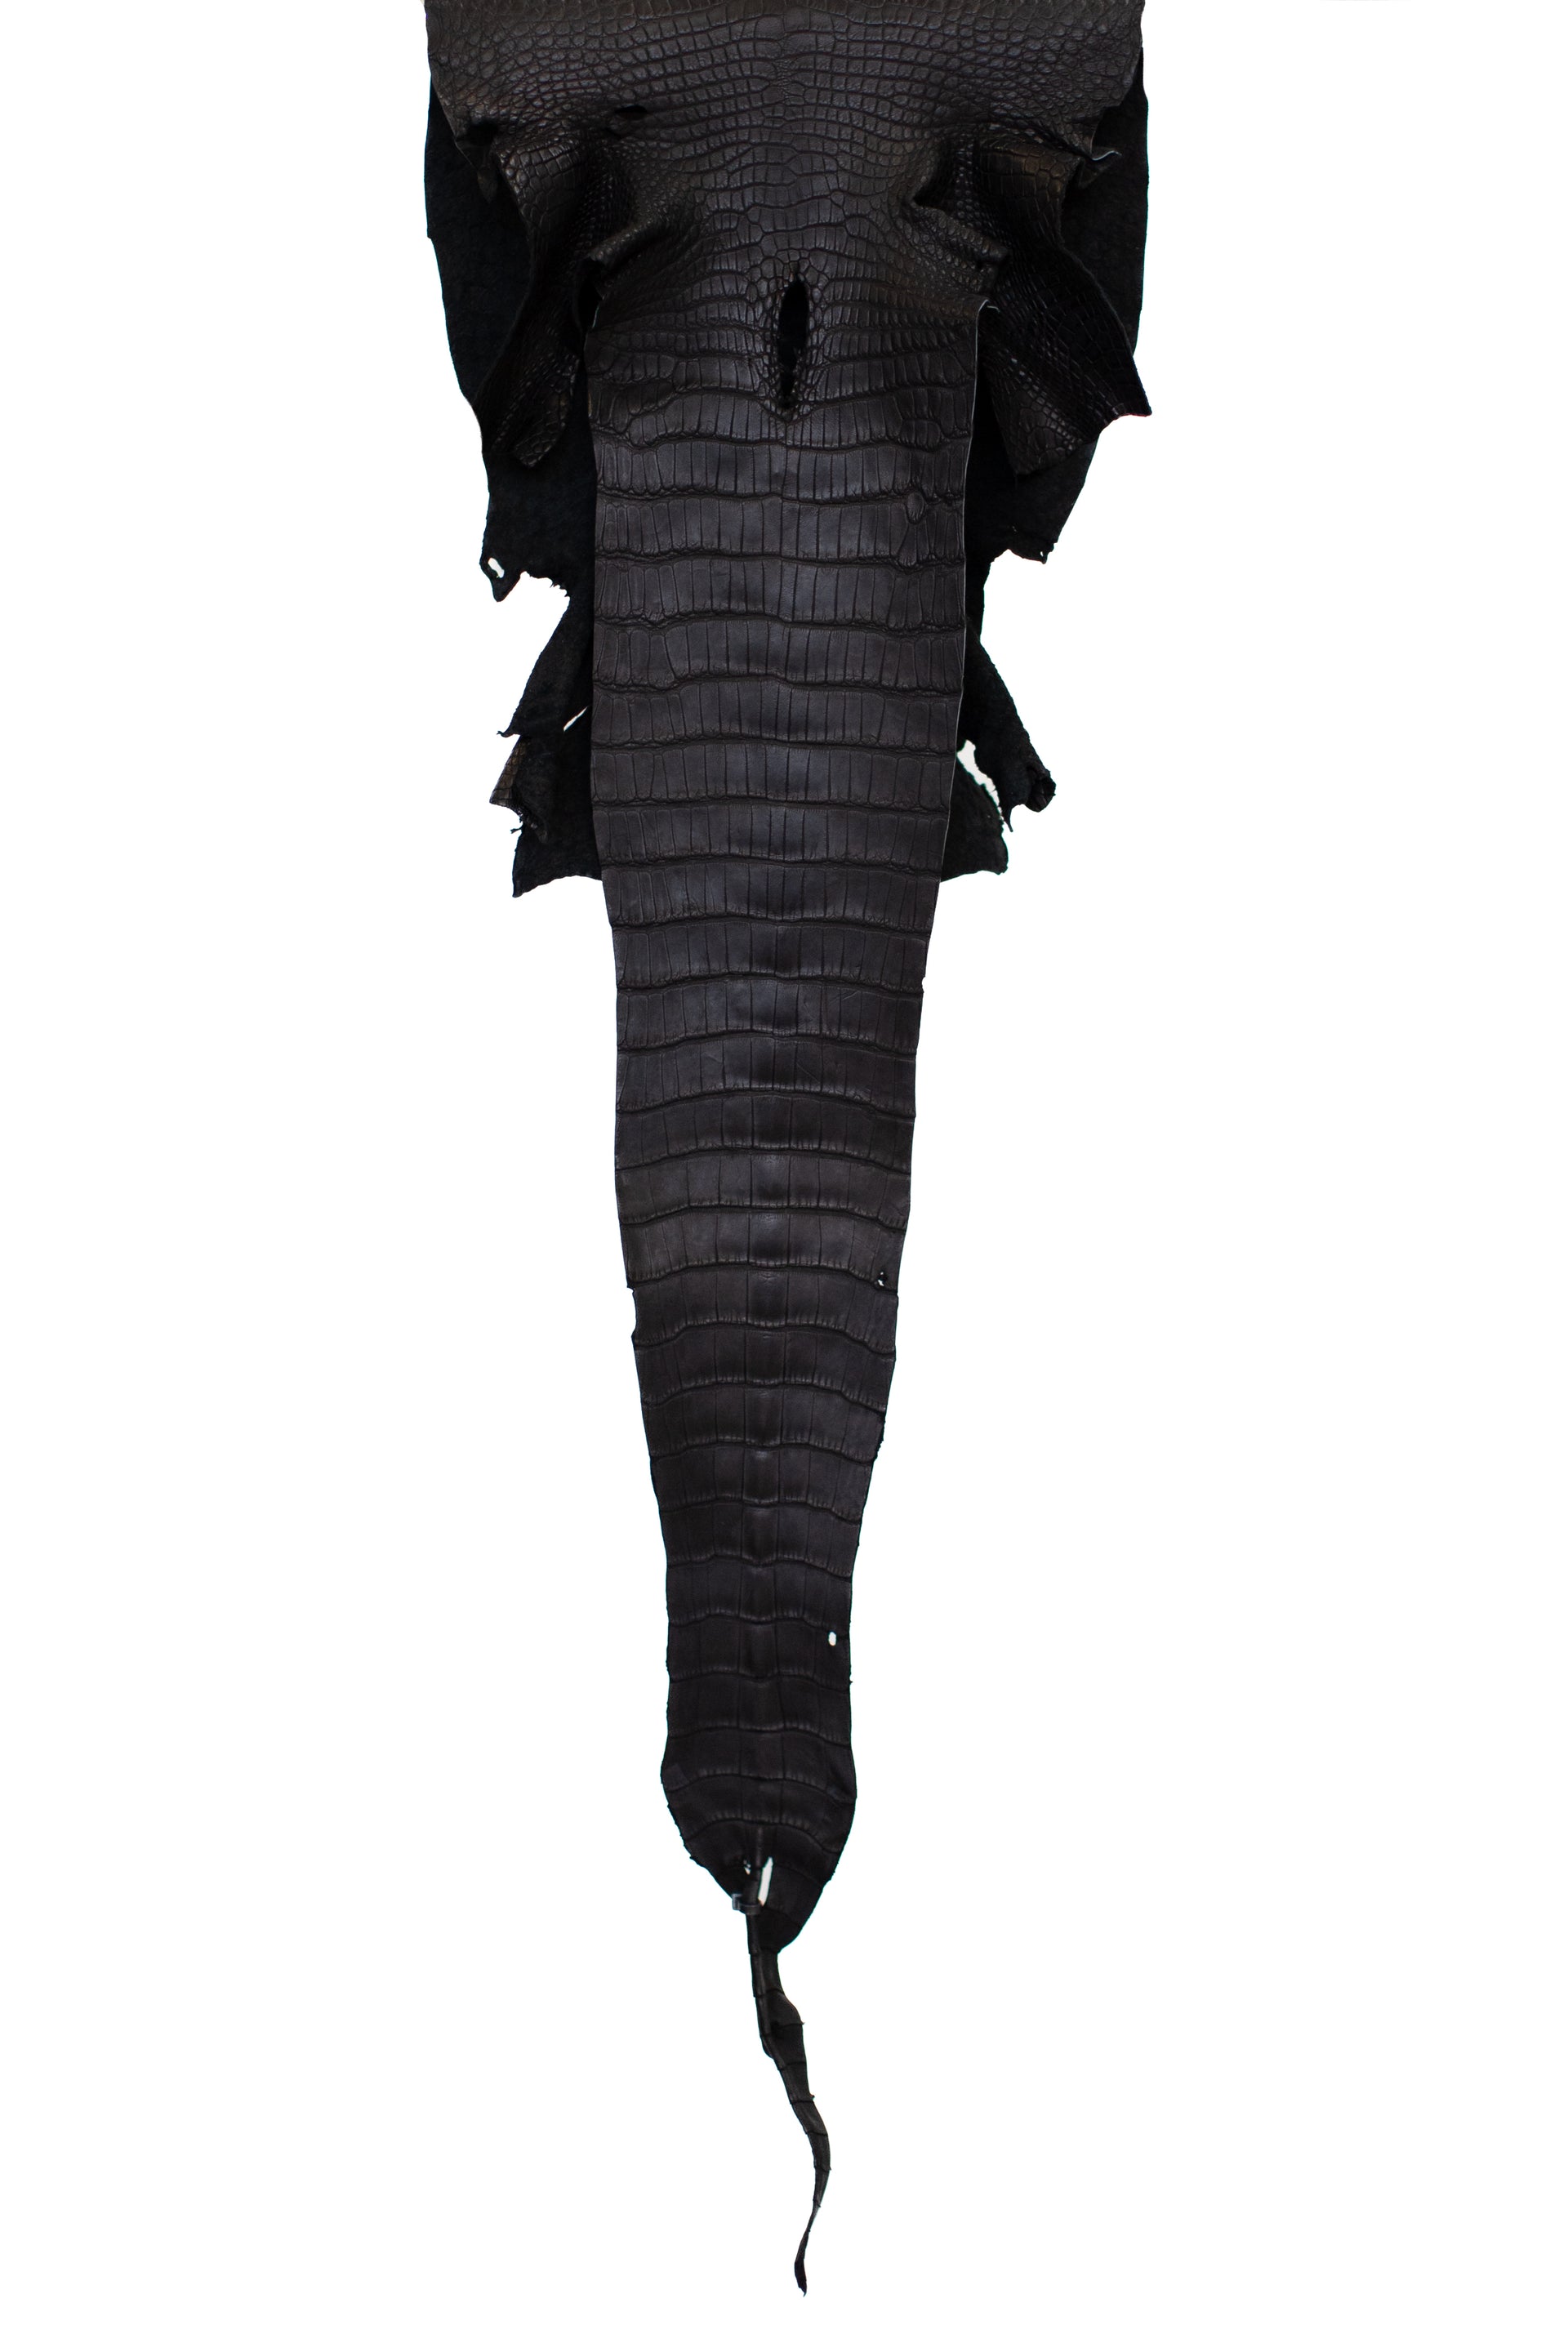 30 cm Grade 2/3 Black Matte Wild American Alligator Leather - Tag: LA21-0101512